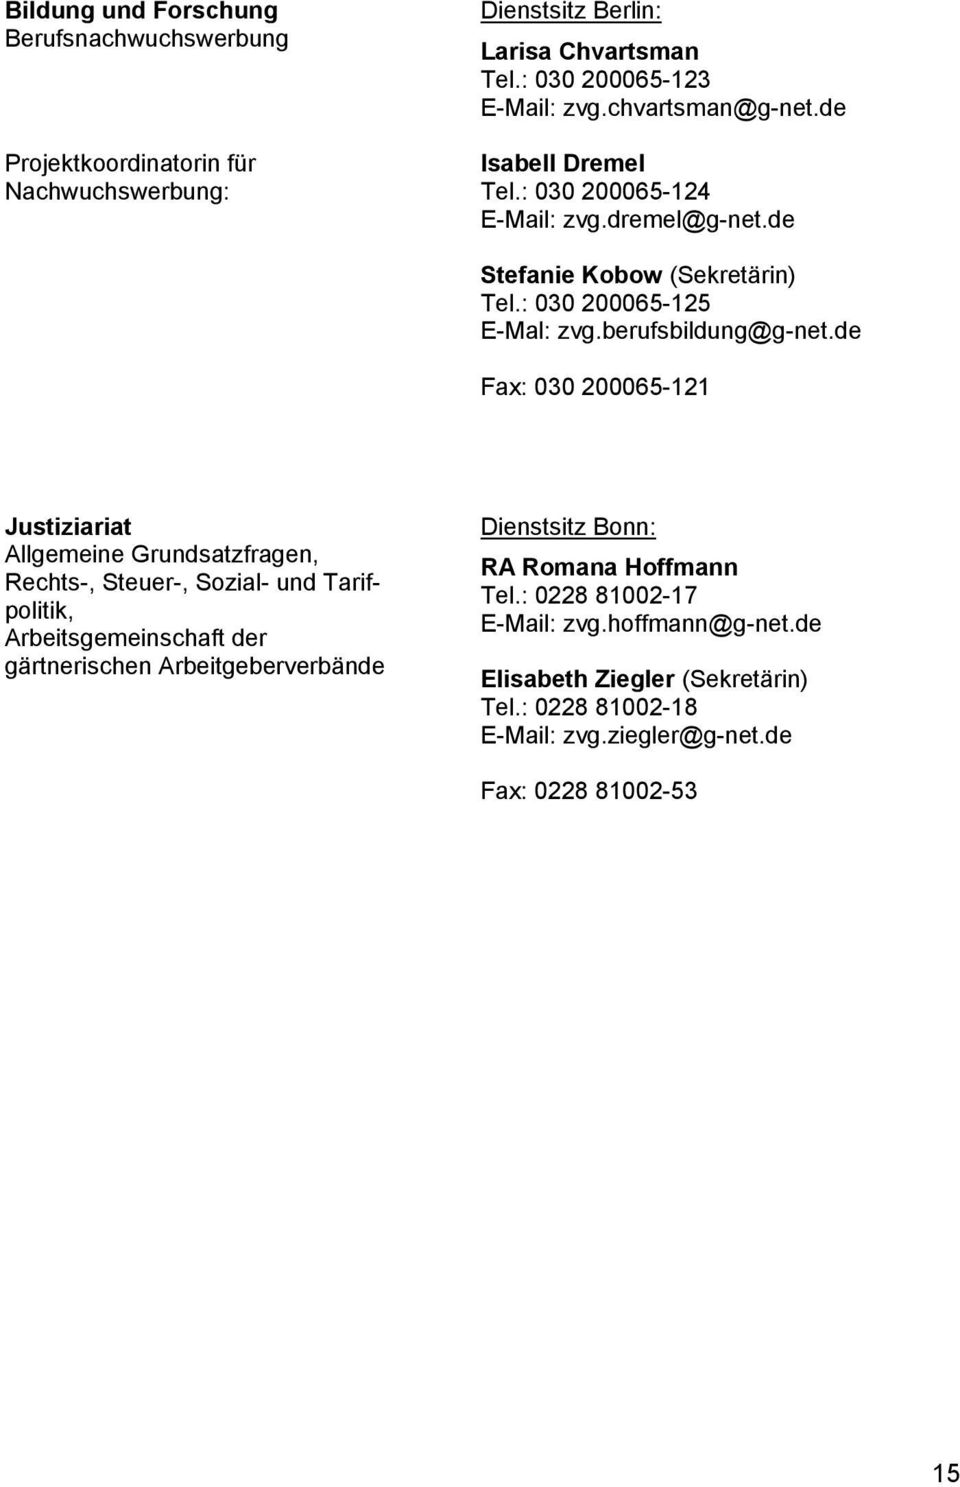 de Fax: 030 200065-121 Justiziariat Allgemeine Grundsatzfragen, Rechts-, Steuer-, Sozial- und Tarifpolitik, Arbeitsgemeinschaft der gärtnerischen Arbeitgeberverbände